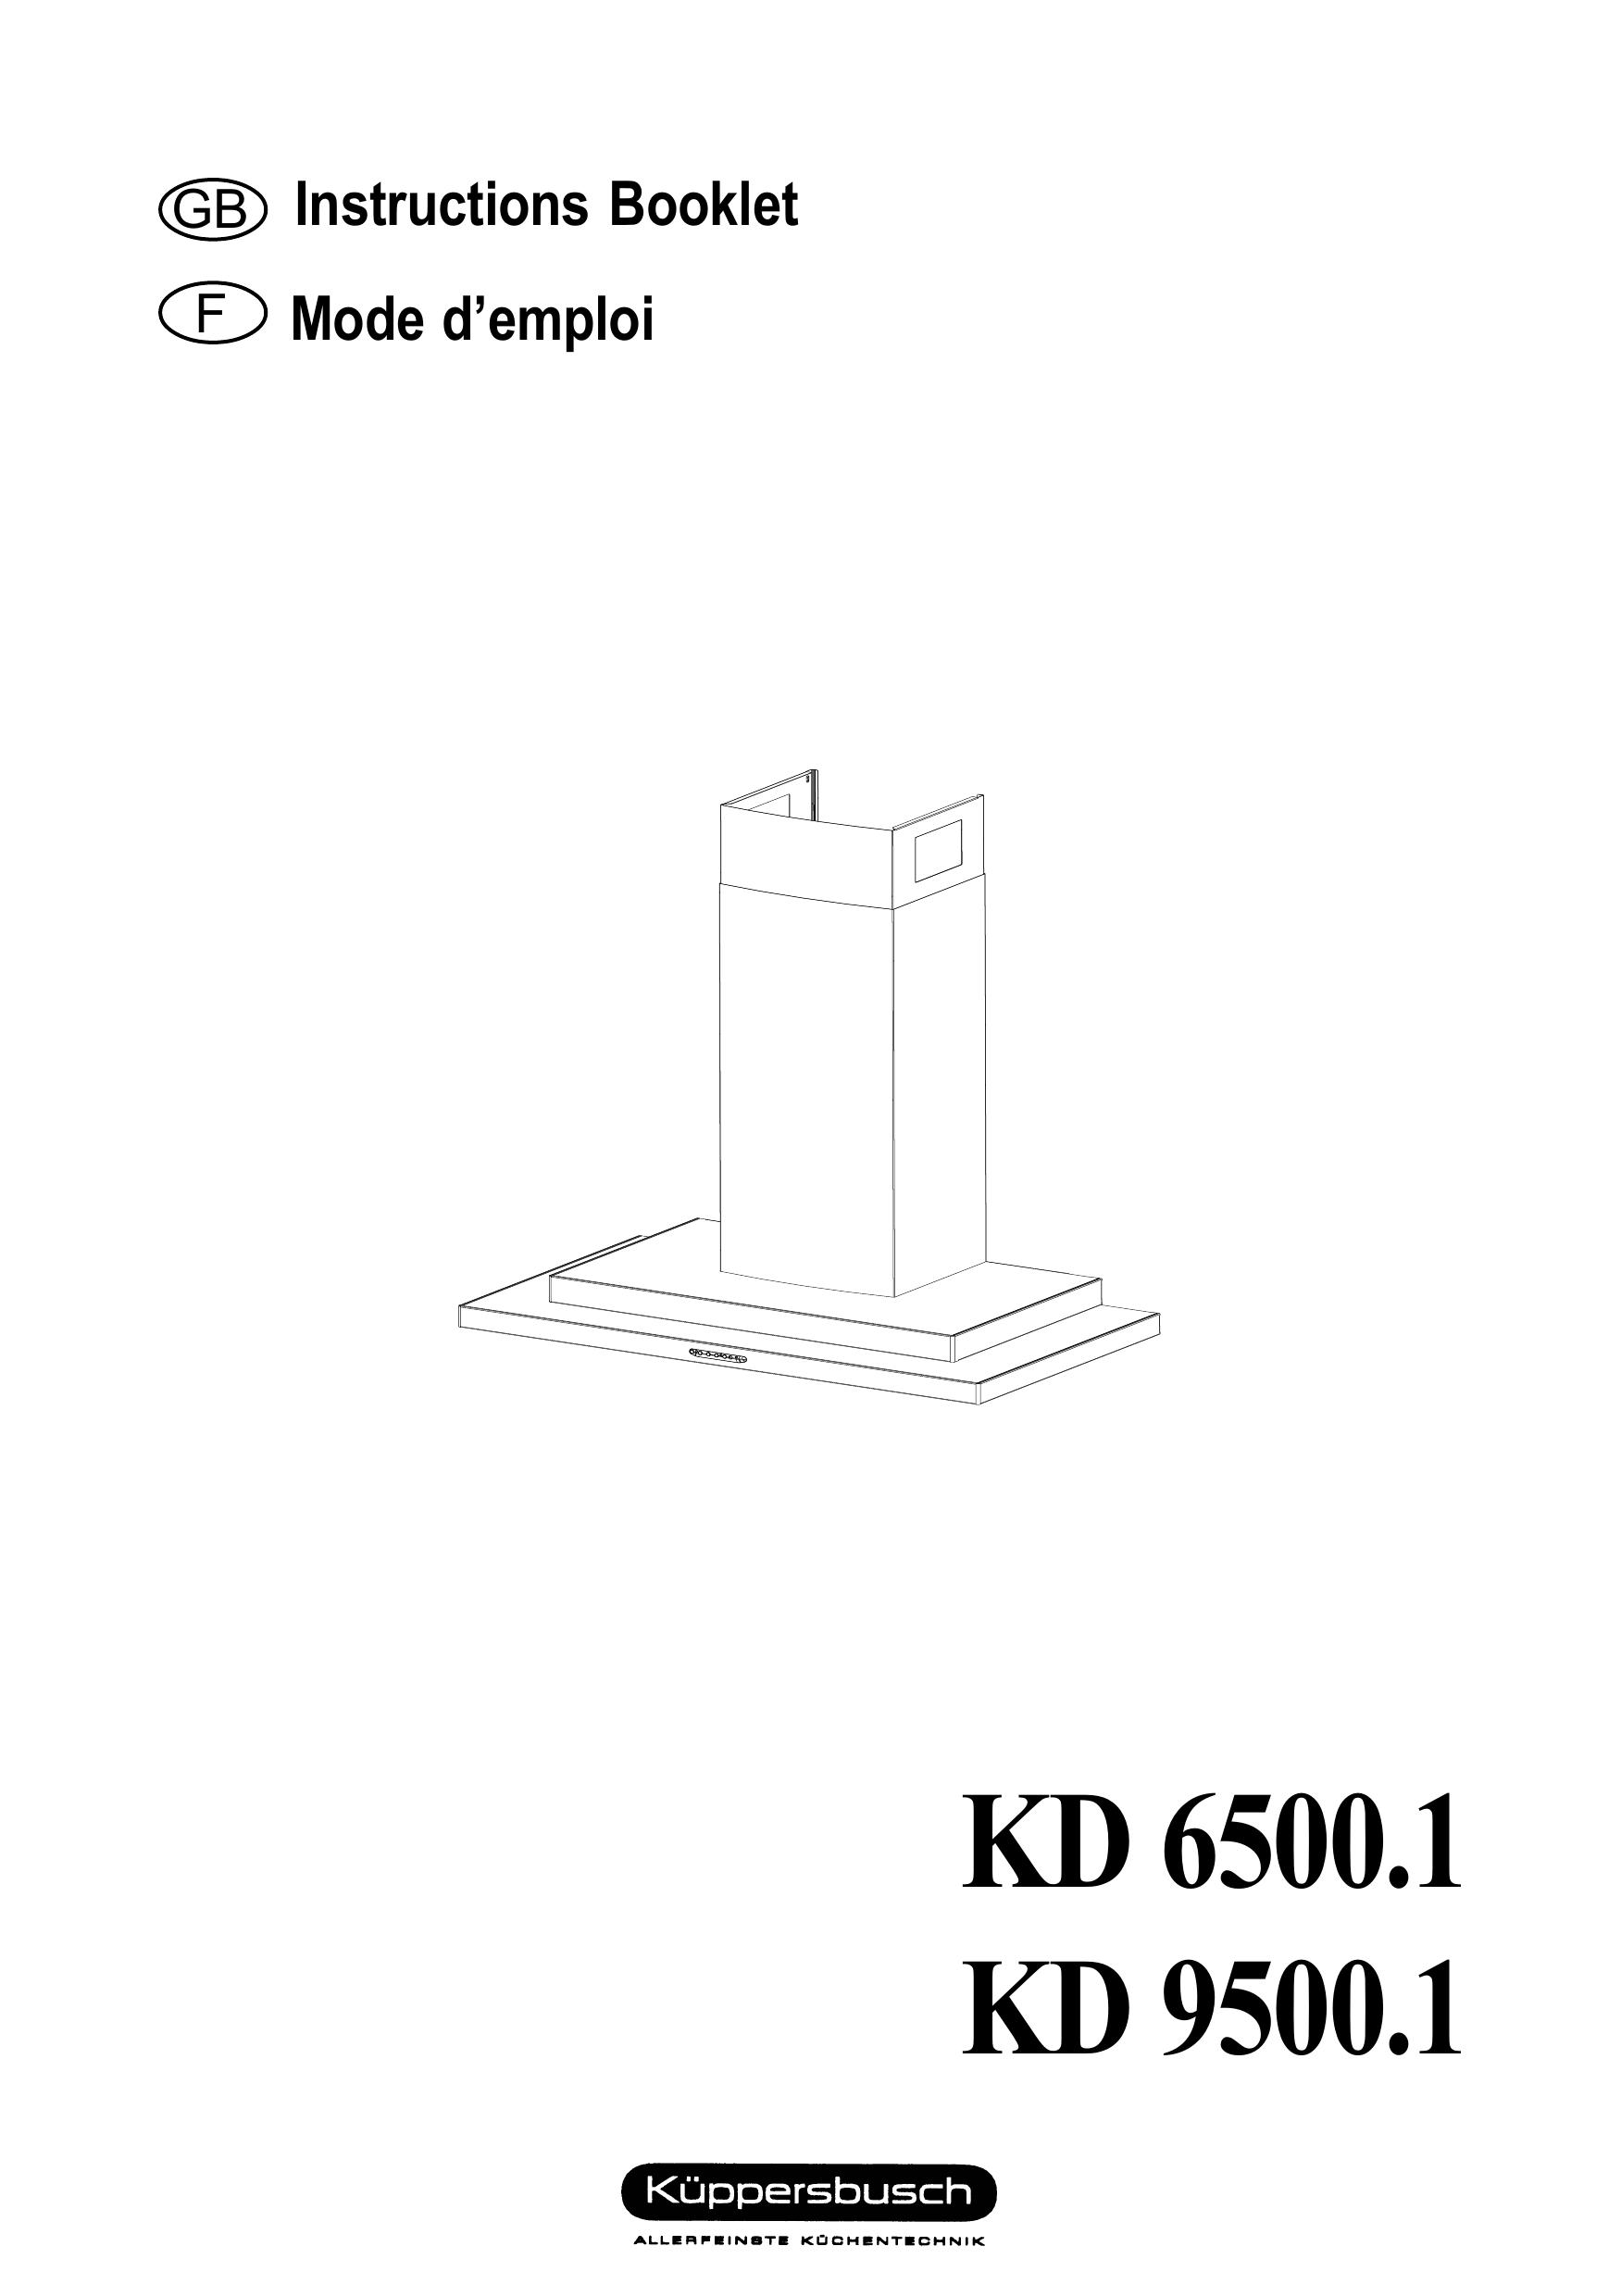 Kuppersbusch USA KD 6500.1 Ventilation Hood User Manual